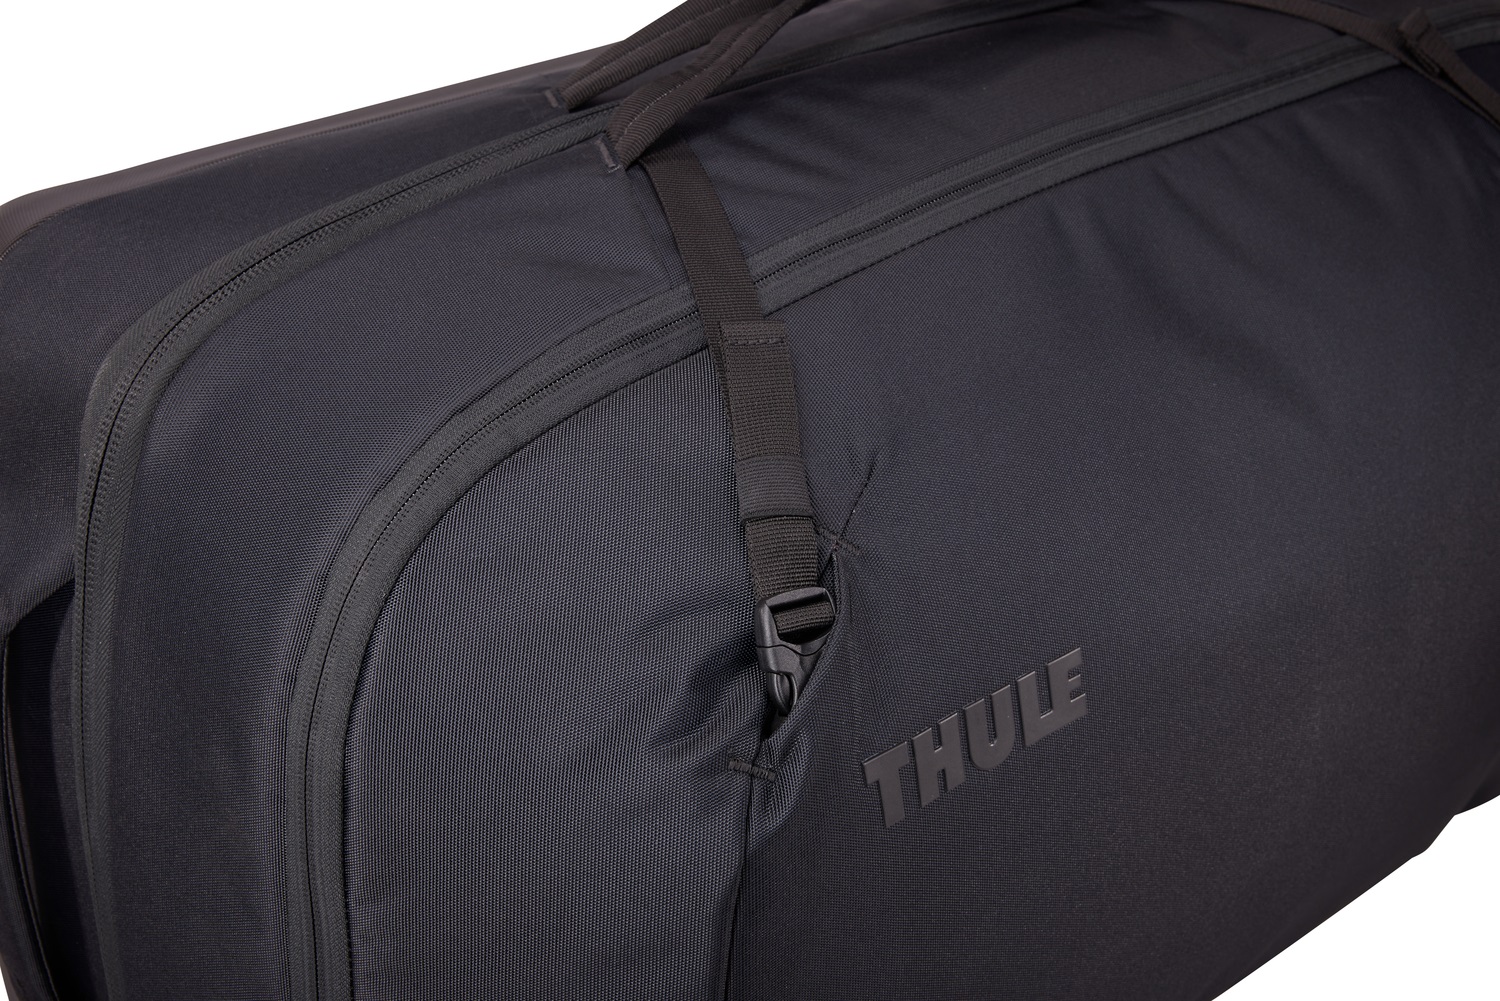 Thule Subterra 2 putna torba s kotačima 70cm/90L za unos prtljage u zrakoplov- crna